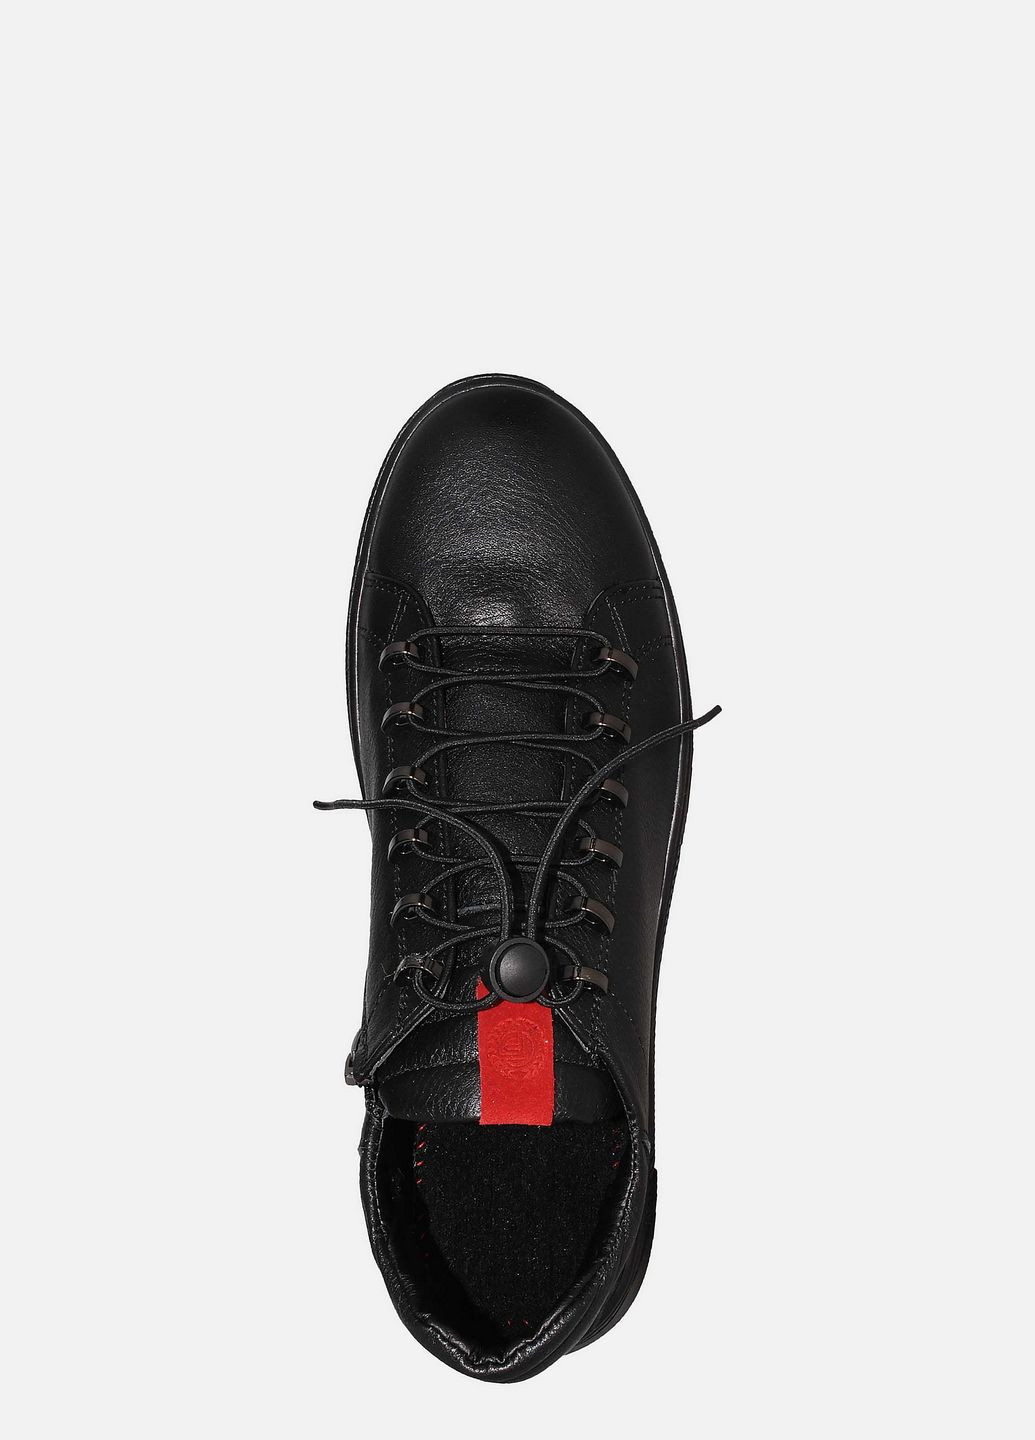 Черные осенние ботинки 720чл-чб черный-красный Fabiani